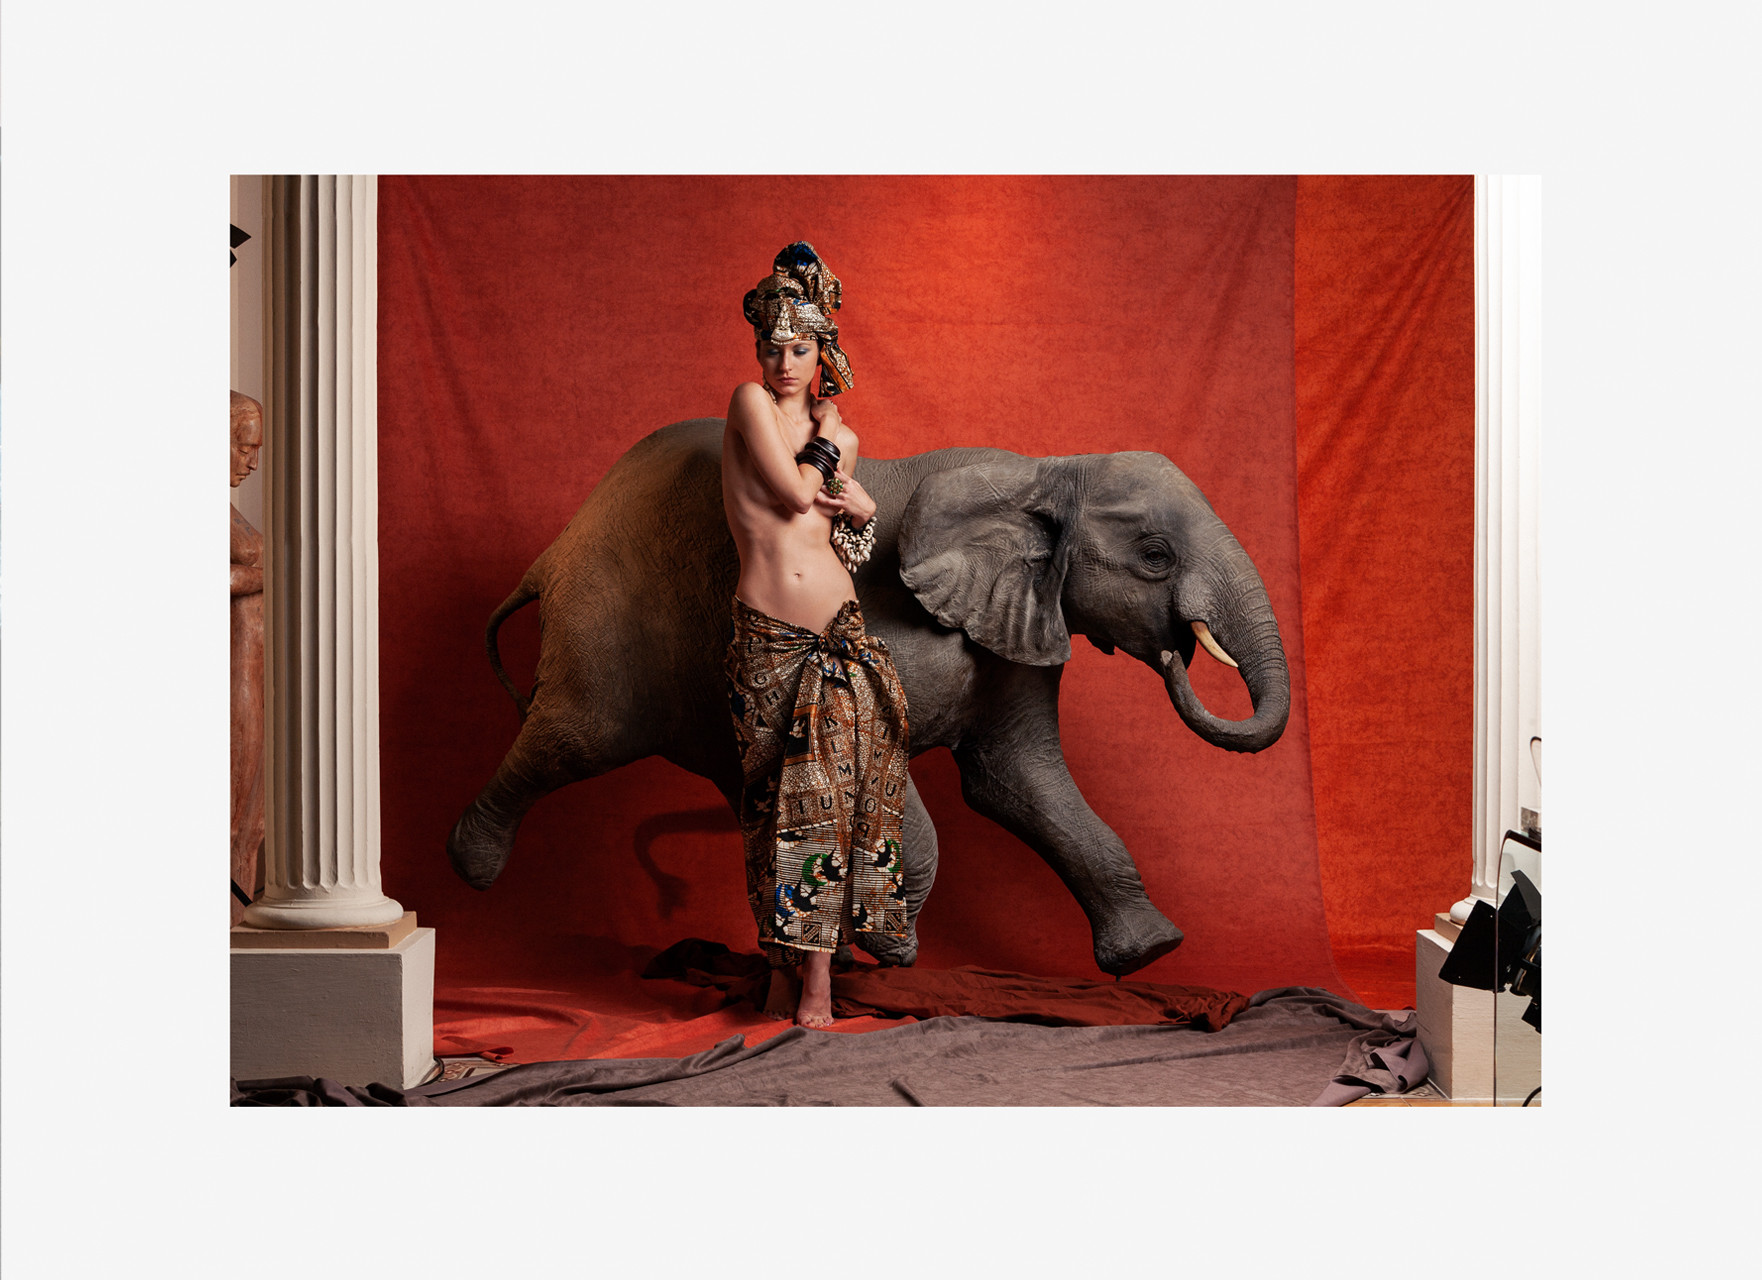 NINA-AND-THE-ELEPHANT-JUANMI-MARQUEZ-1762x1280-1762x1280